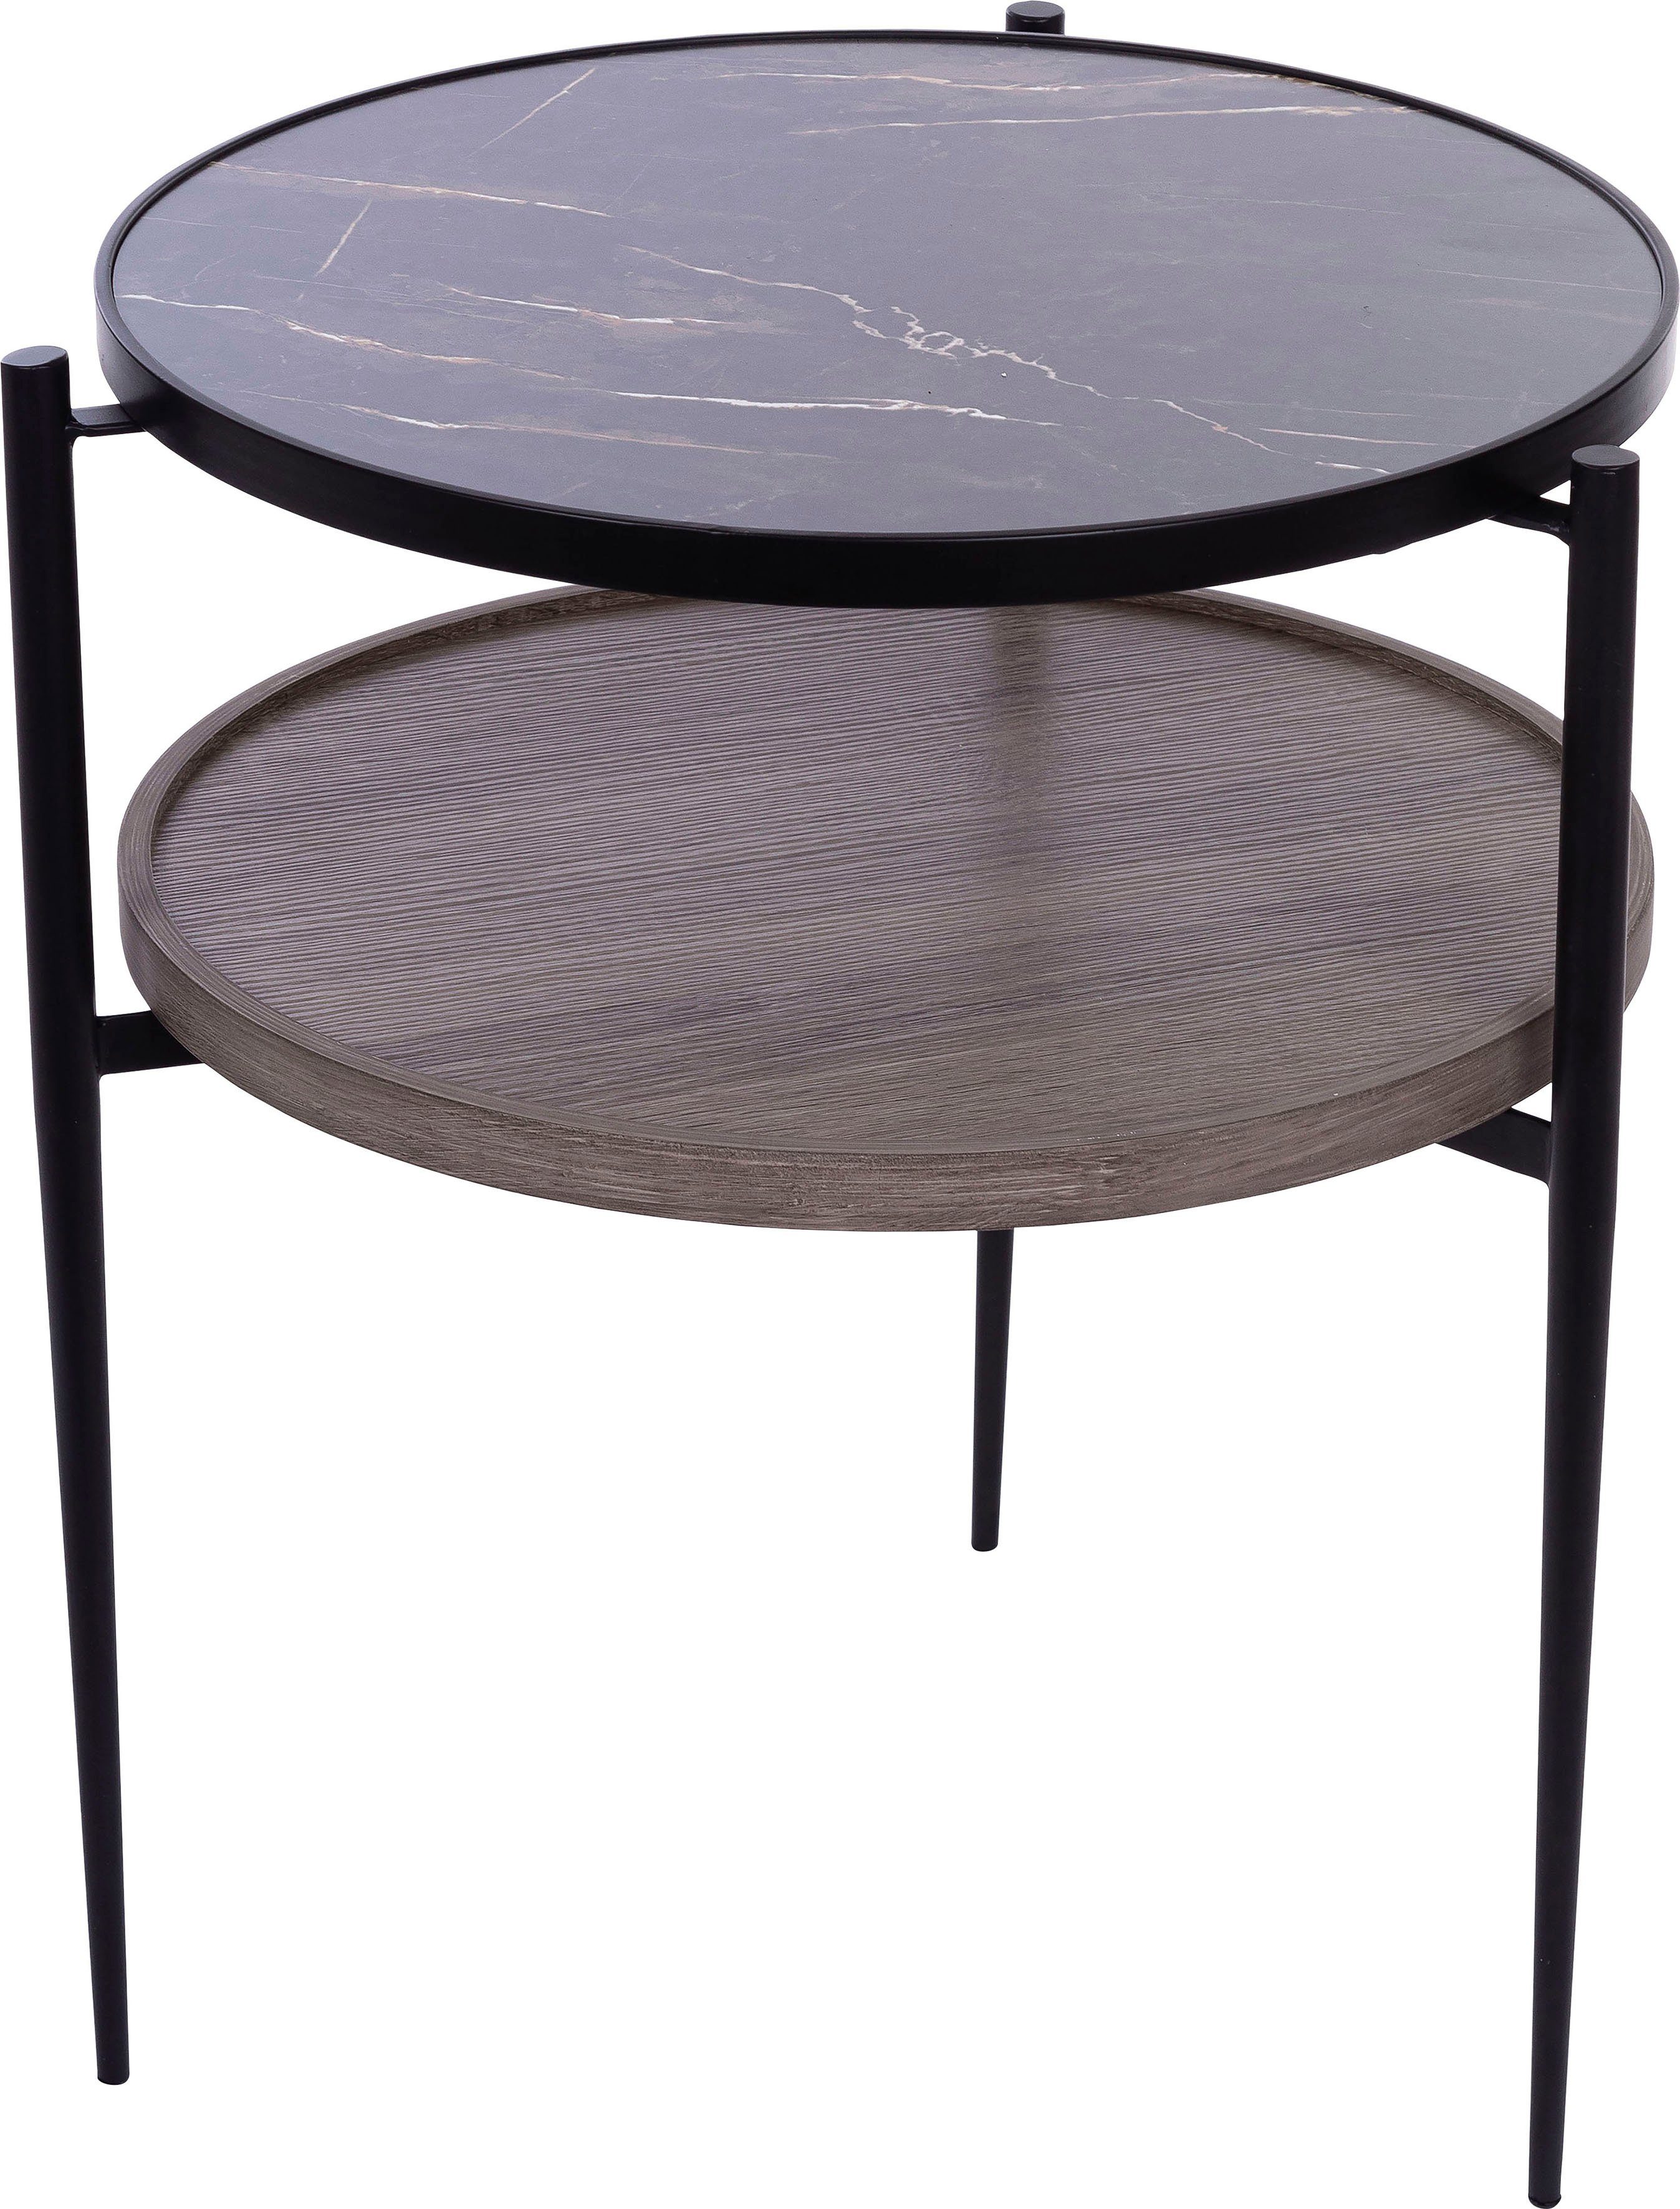 Rund, belassender Beistelltisch Tischplatte edlem im natur Holz Design inkl Ablagefach, Tischplatte affaire Beistelltisch, Home